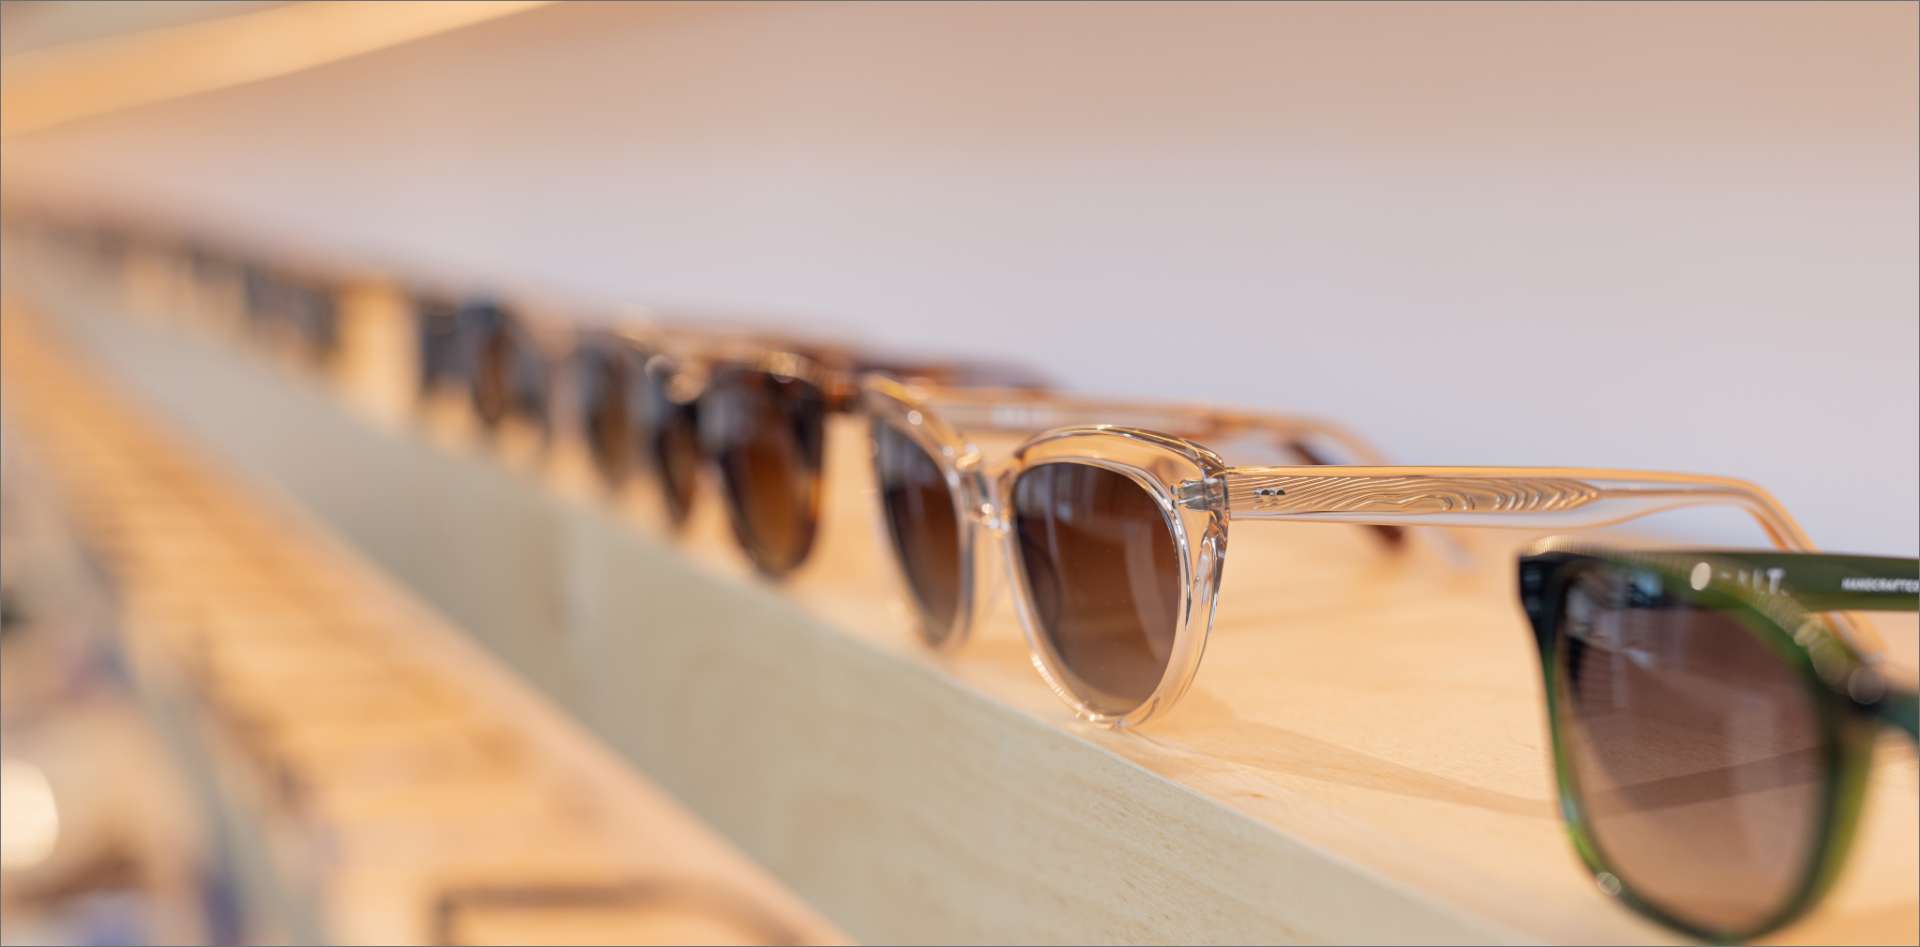 sunglasses on a shelf